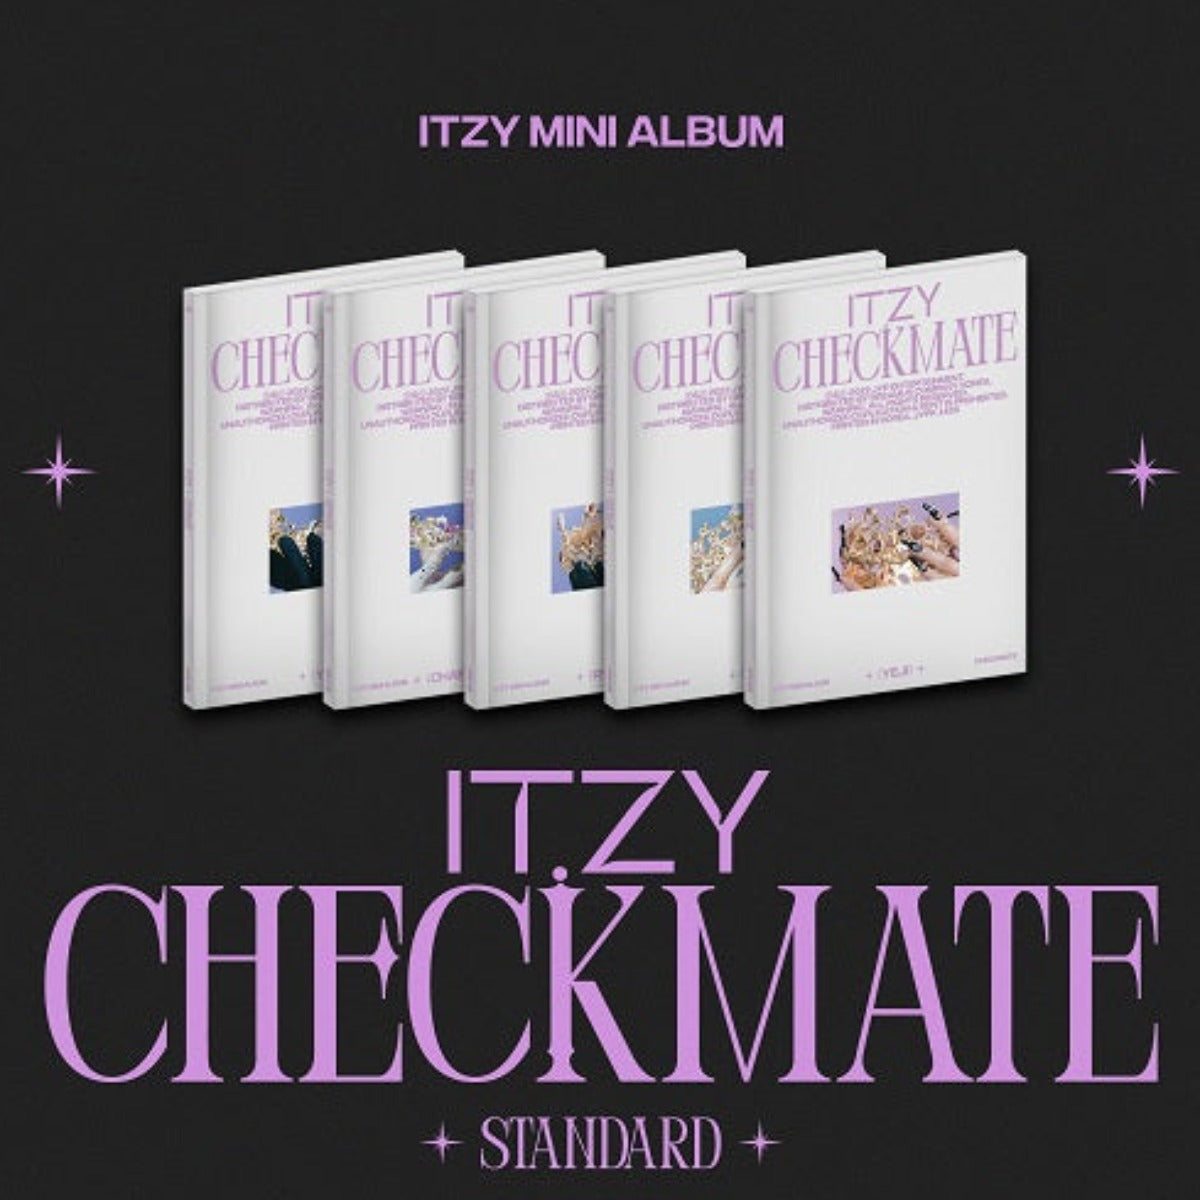 ITZY - 5th Mini Album: Checkmate (Standard Edition) (Random Version)